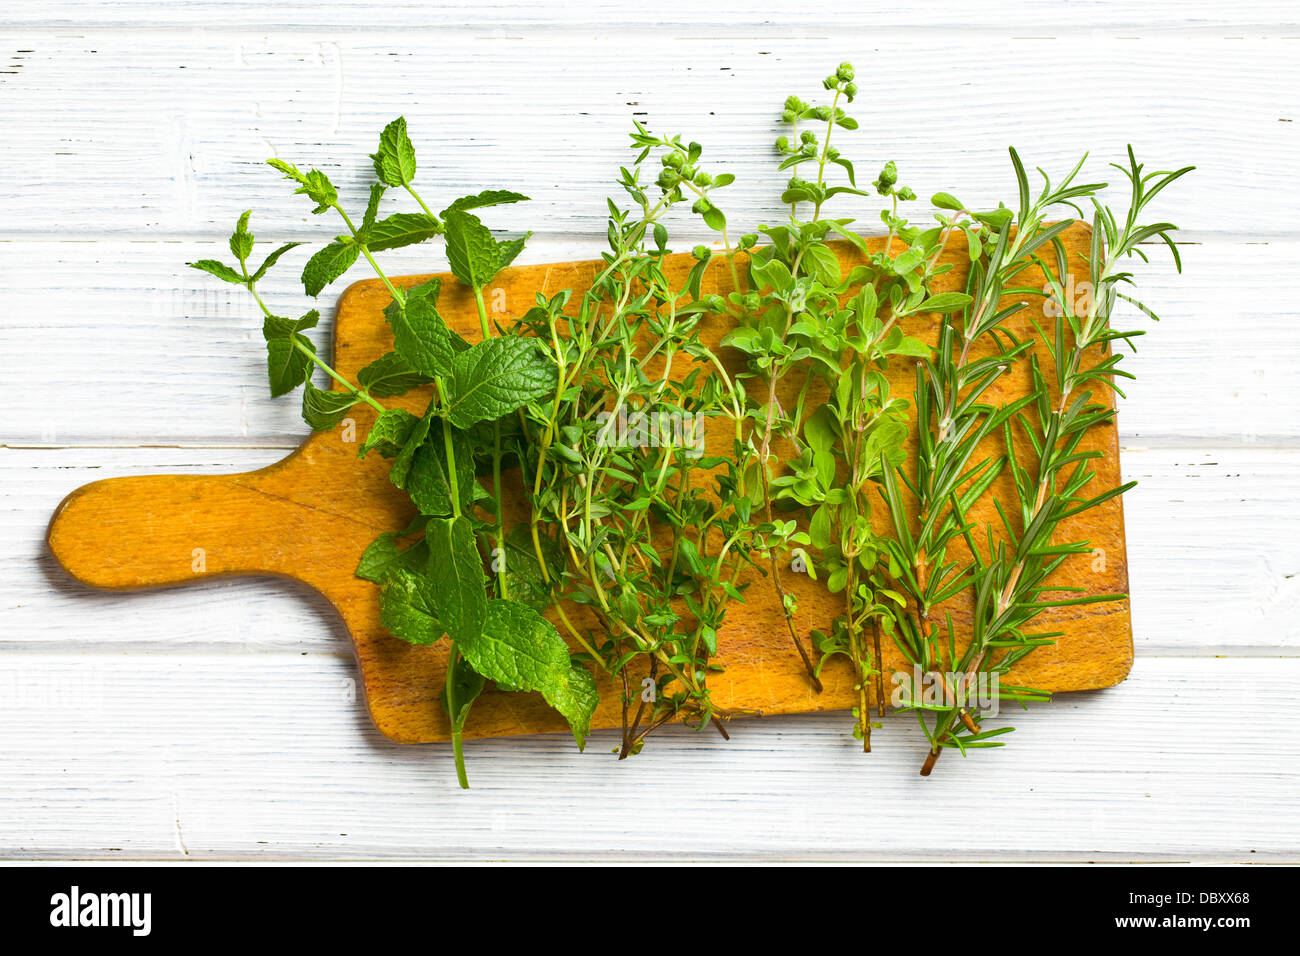 various herbs on kitchen table Stock Photo